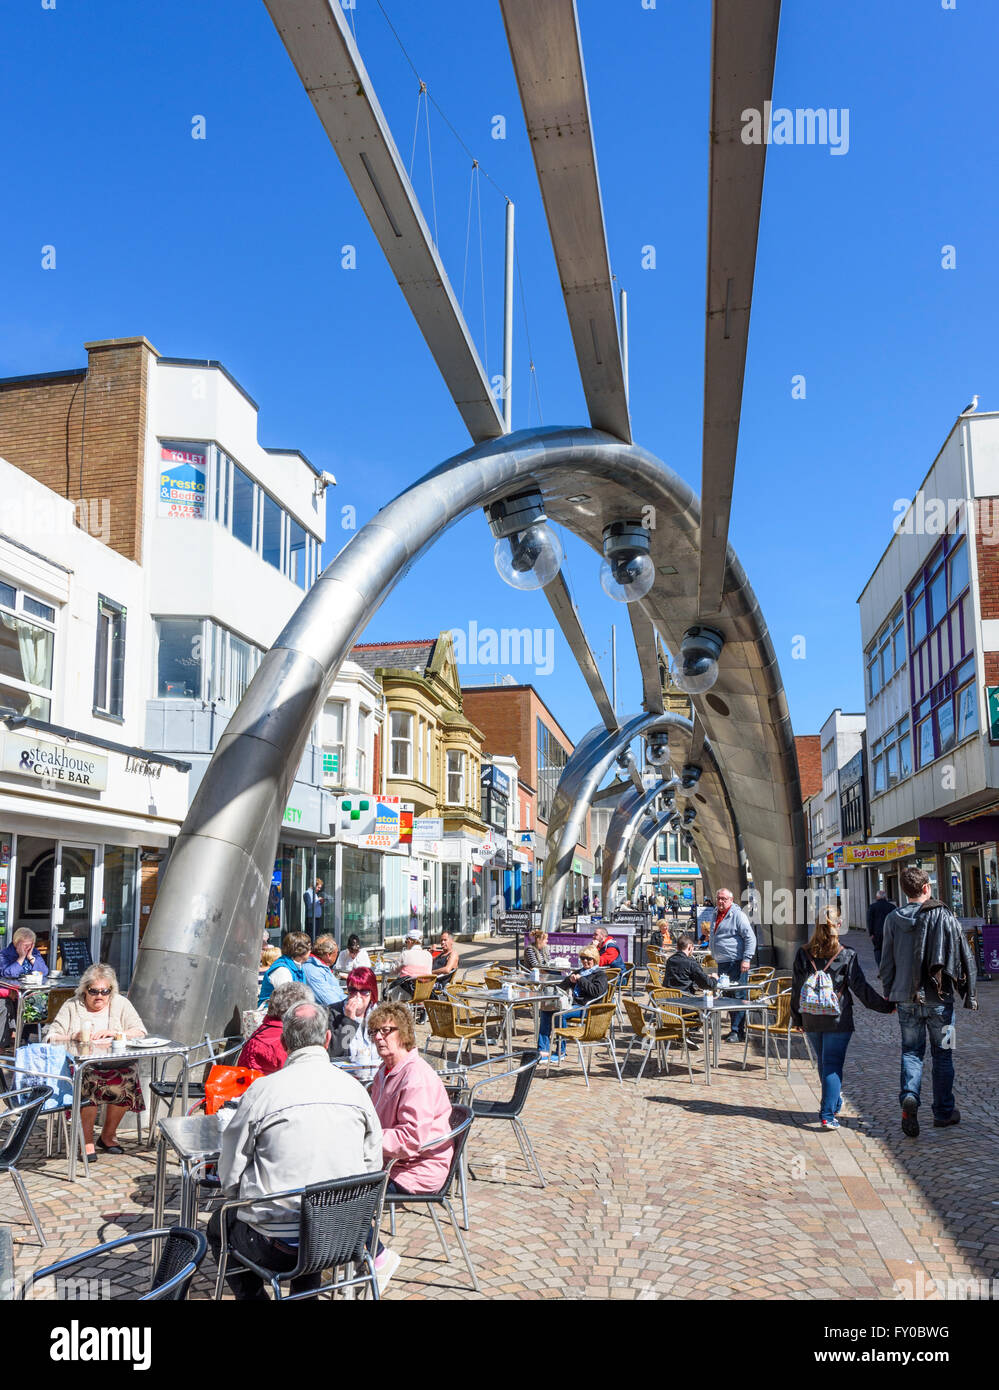 Bajo un cielo azul, los turistas beber y comer en los cafés en la calle Church, Blackpool famoso por sus muy moderno alumbrado público Foto de stock